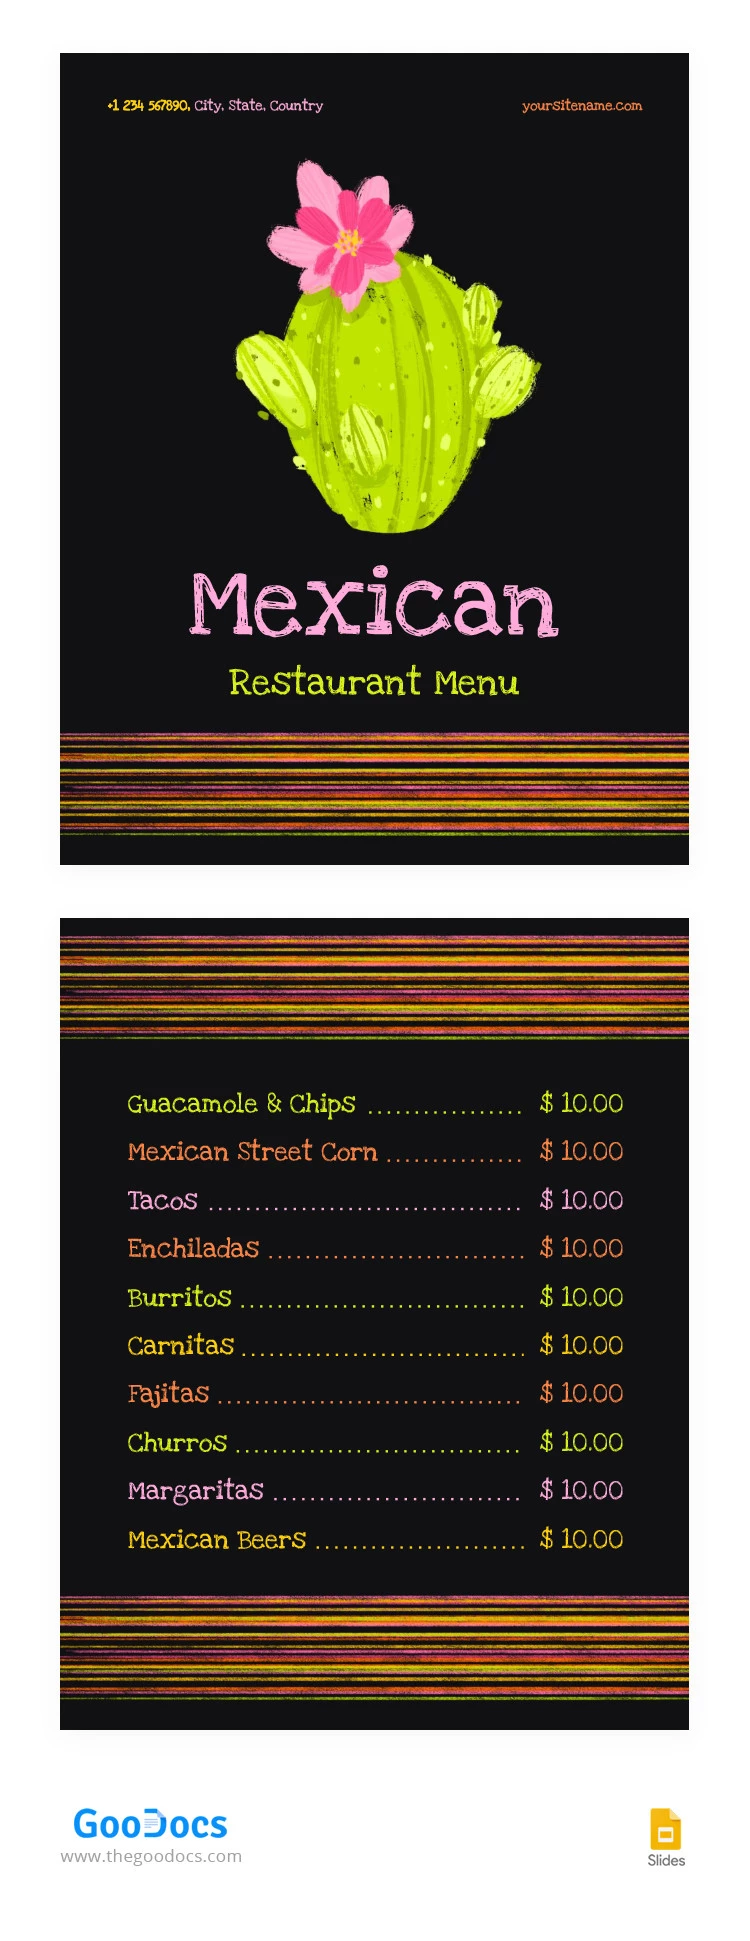 Menu de um Restaurante Mexicano Brilhante - free Google Docs Template - 10066461